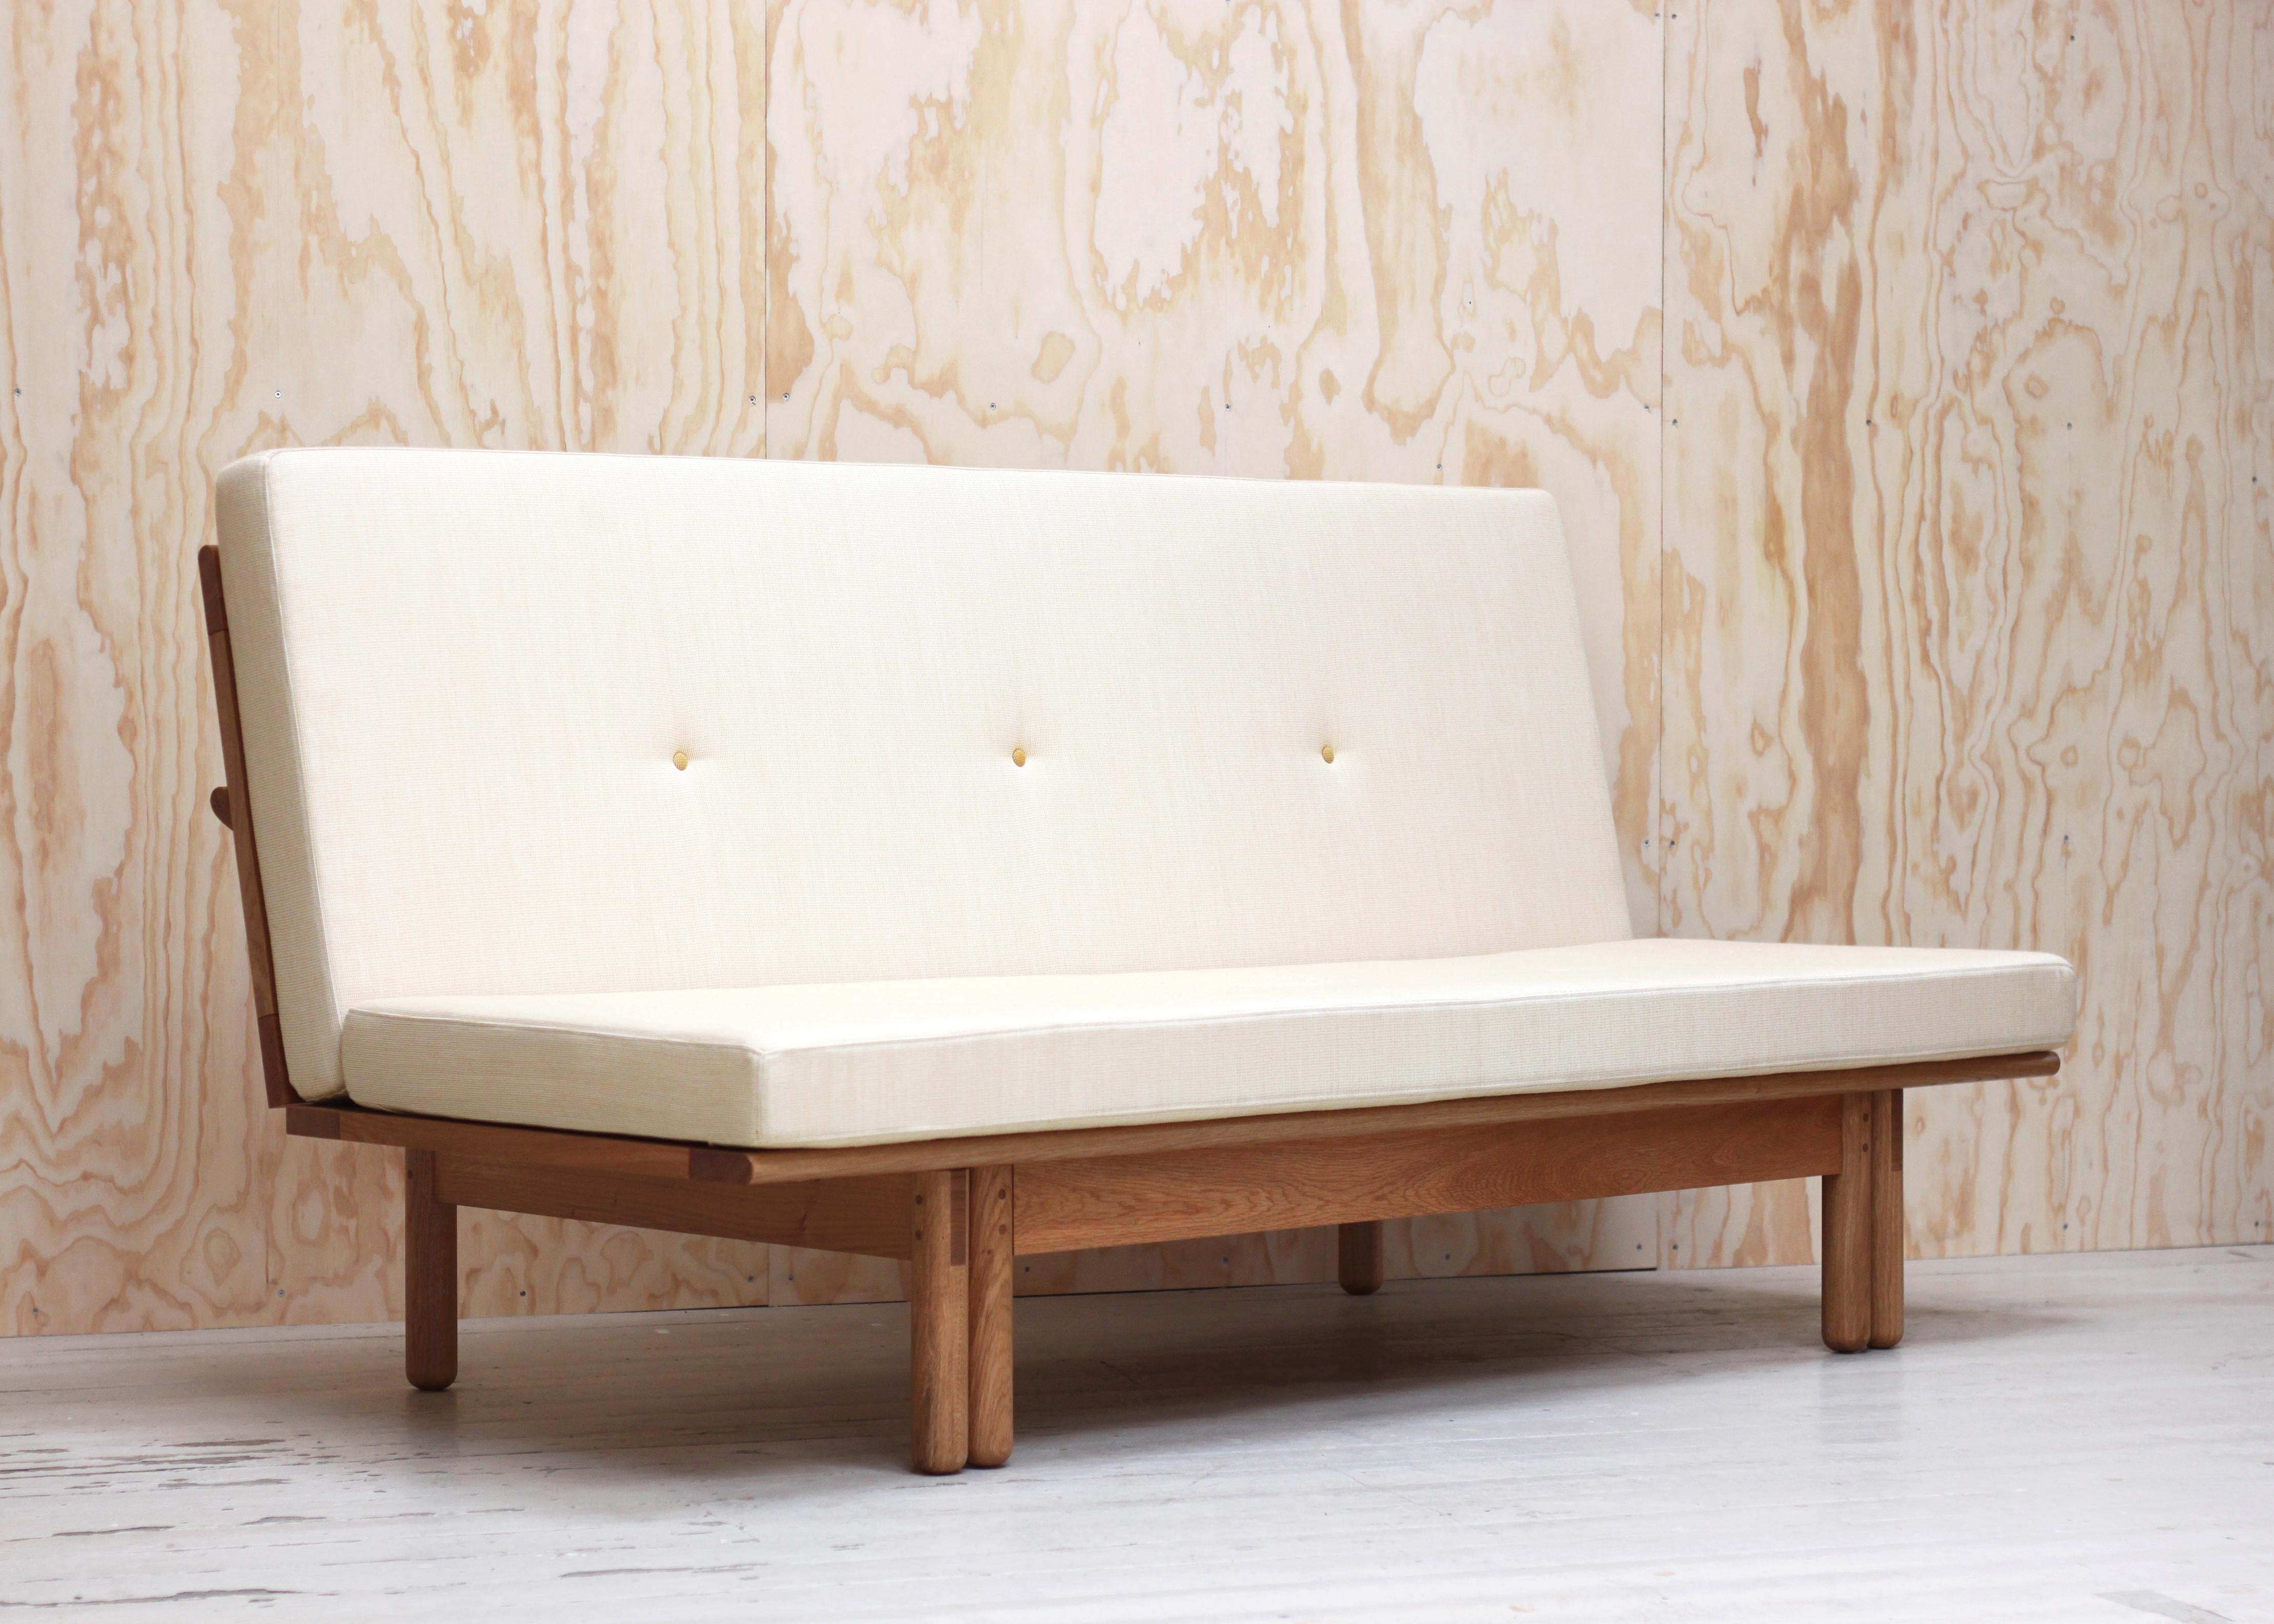 Elegant, contemporain et fonctionnel, le lit de jour Ada est un canapé-lit qui peut transformer n'importe quelle pièce en suite d'invités. Le design intemporel de ce canapé lui permet de s'intégrer confortablement dans n'importe quel environnement,